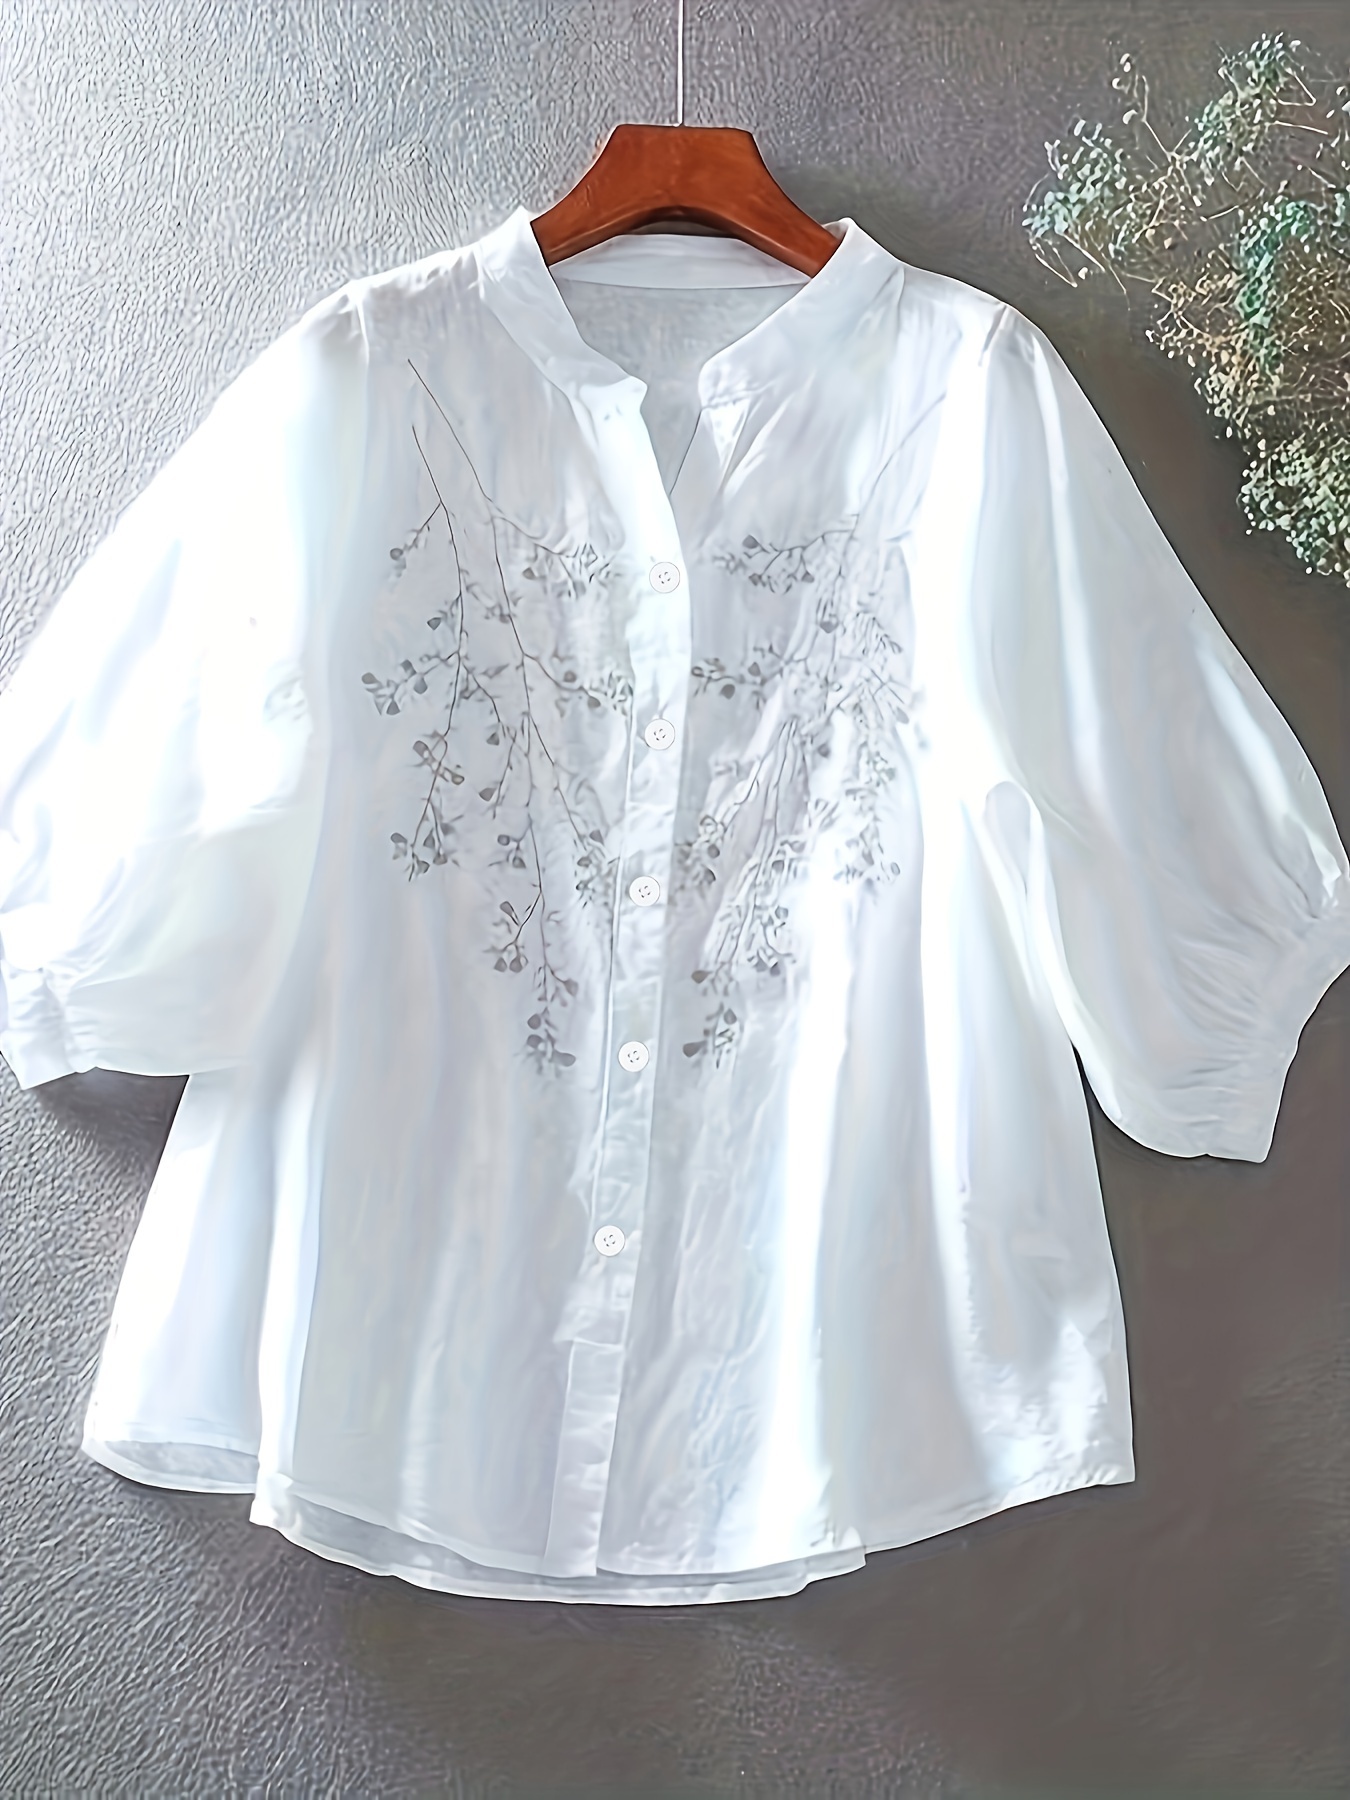 Blusa simple con estampado floral, blusa elegante con cuello levantado y botones delanteros, ropa de mujer